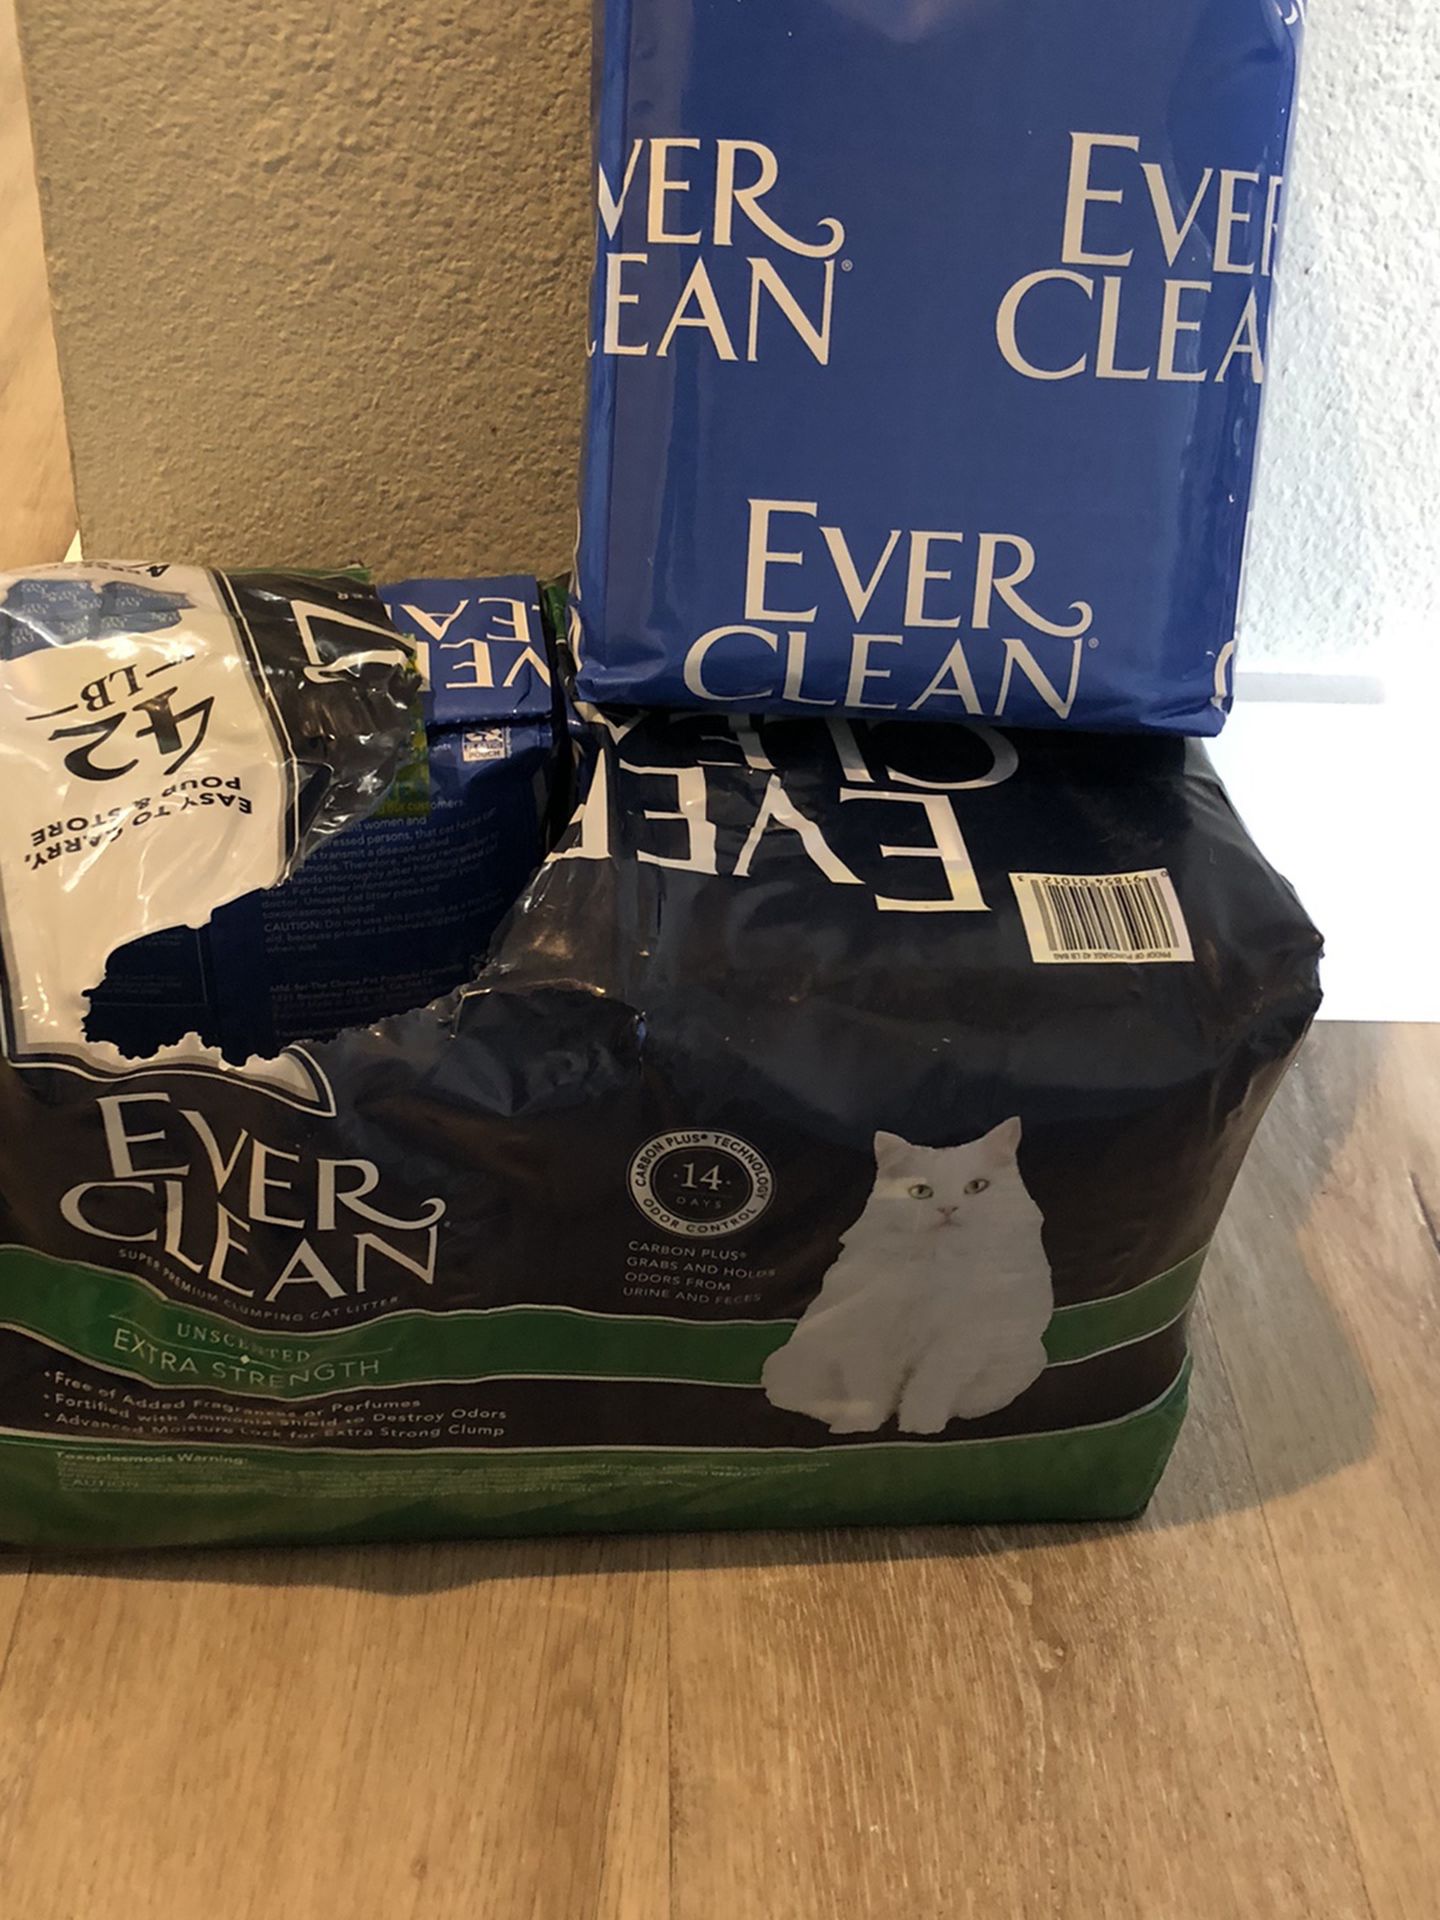 Free Everclean cat litter